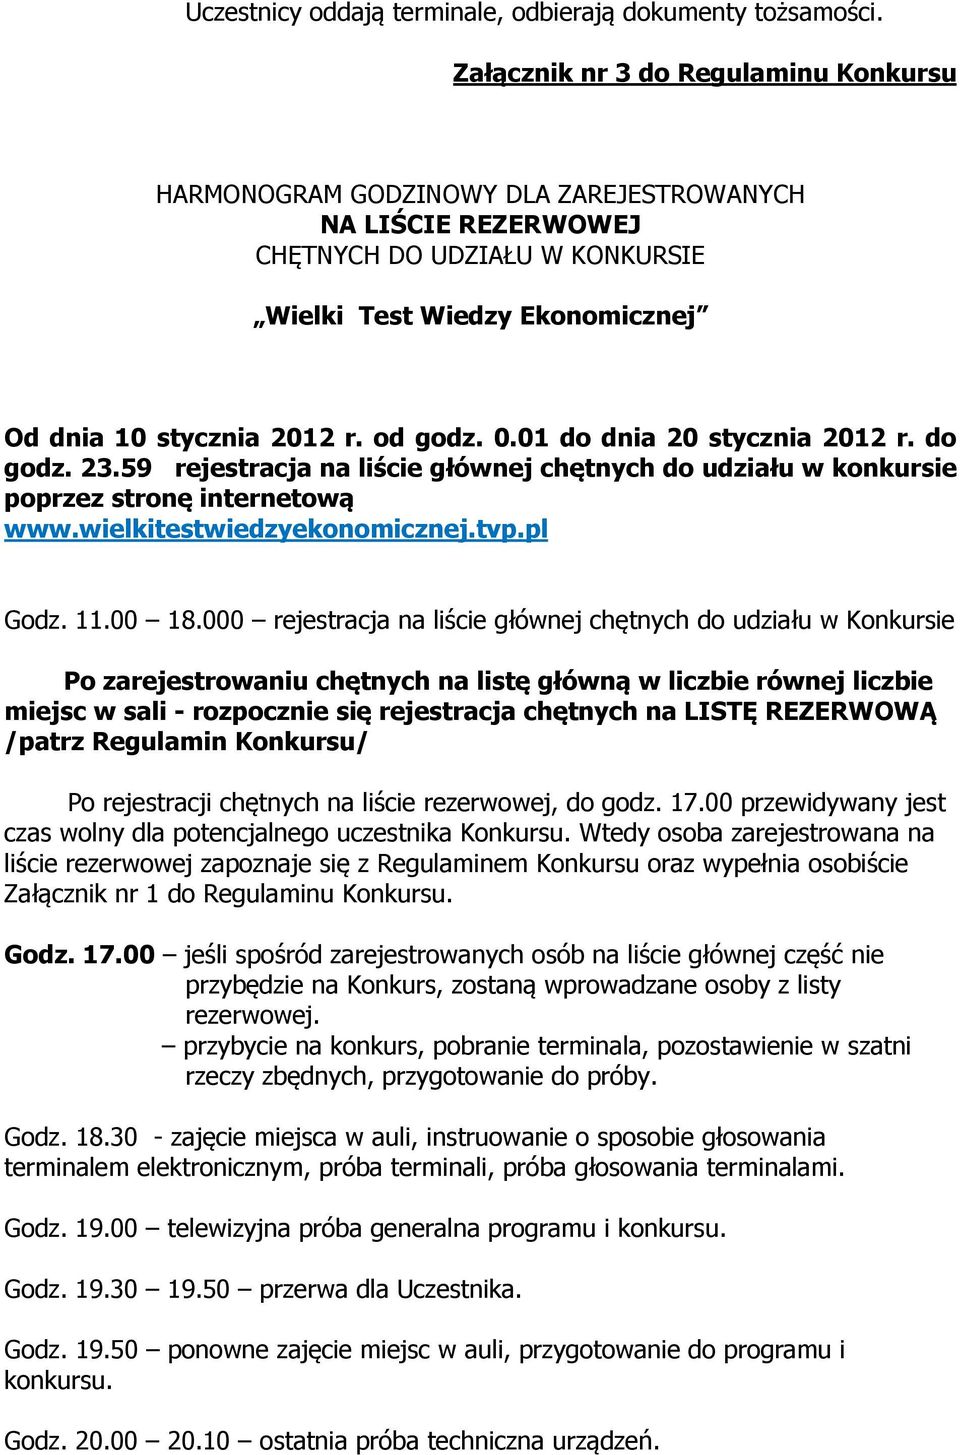 od godz. 0.01 do dnia 20 stycznia 2012 r. do godz. 23.59 rejestracja na liście głównej chętnych do udziału w konkursie poprzez stronę internetową www.wielkitestwiedzyekonomicznej.tvp.pl Godz. 11.